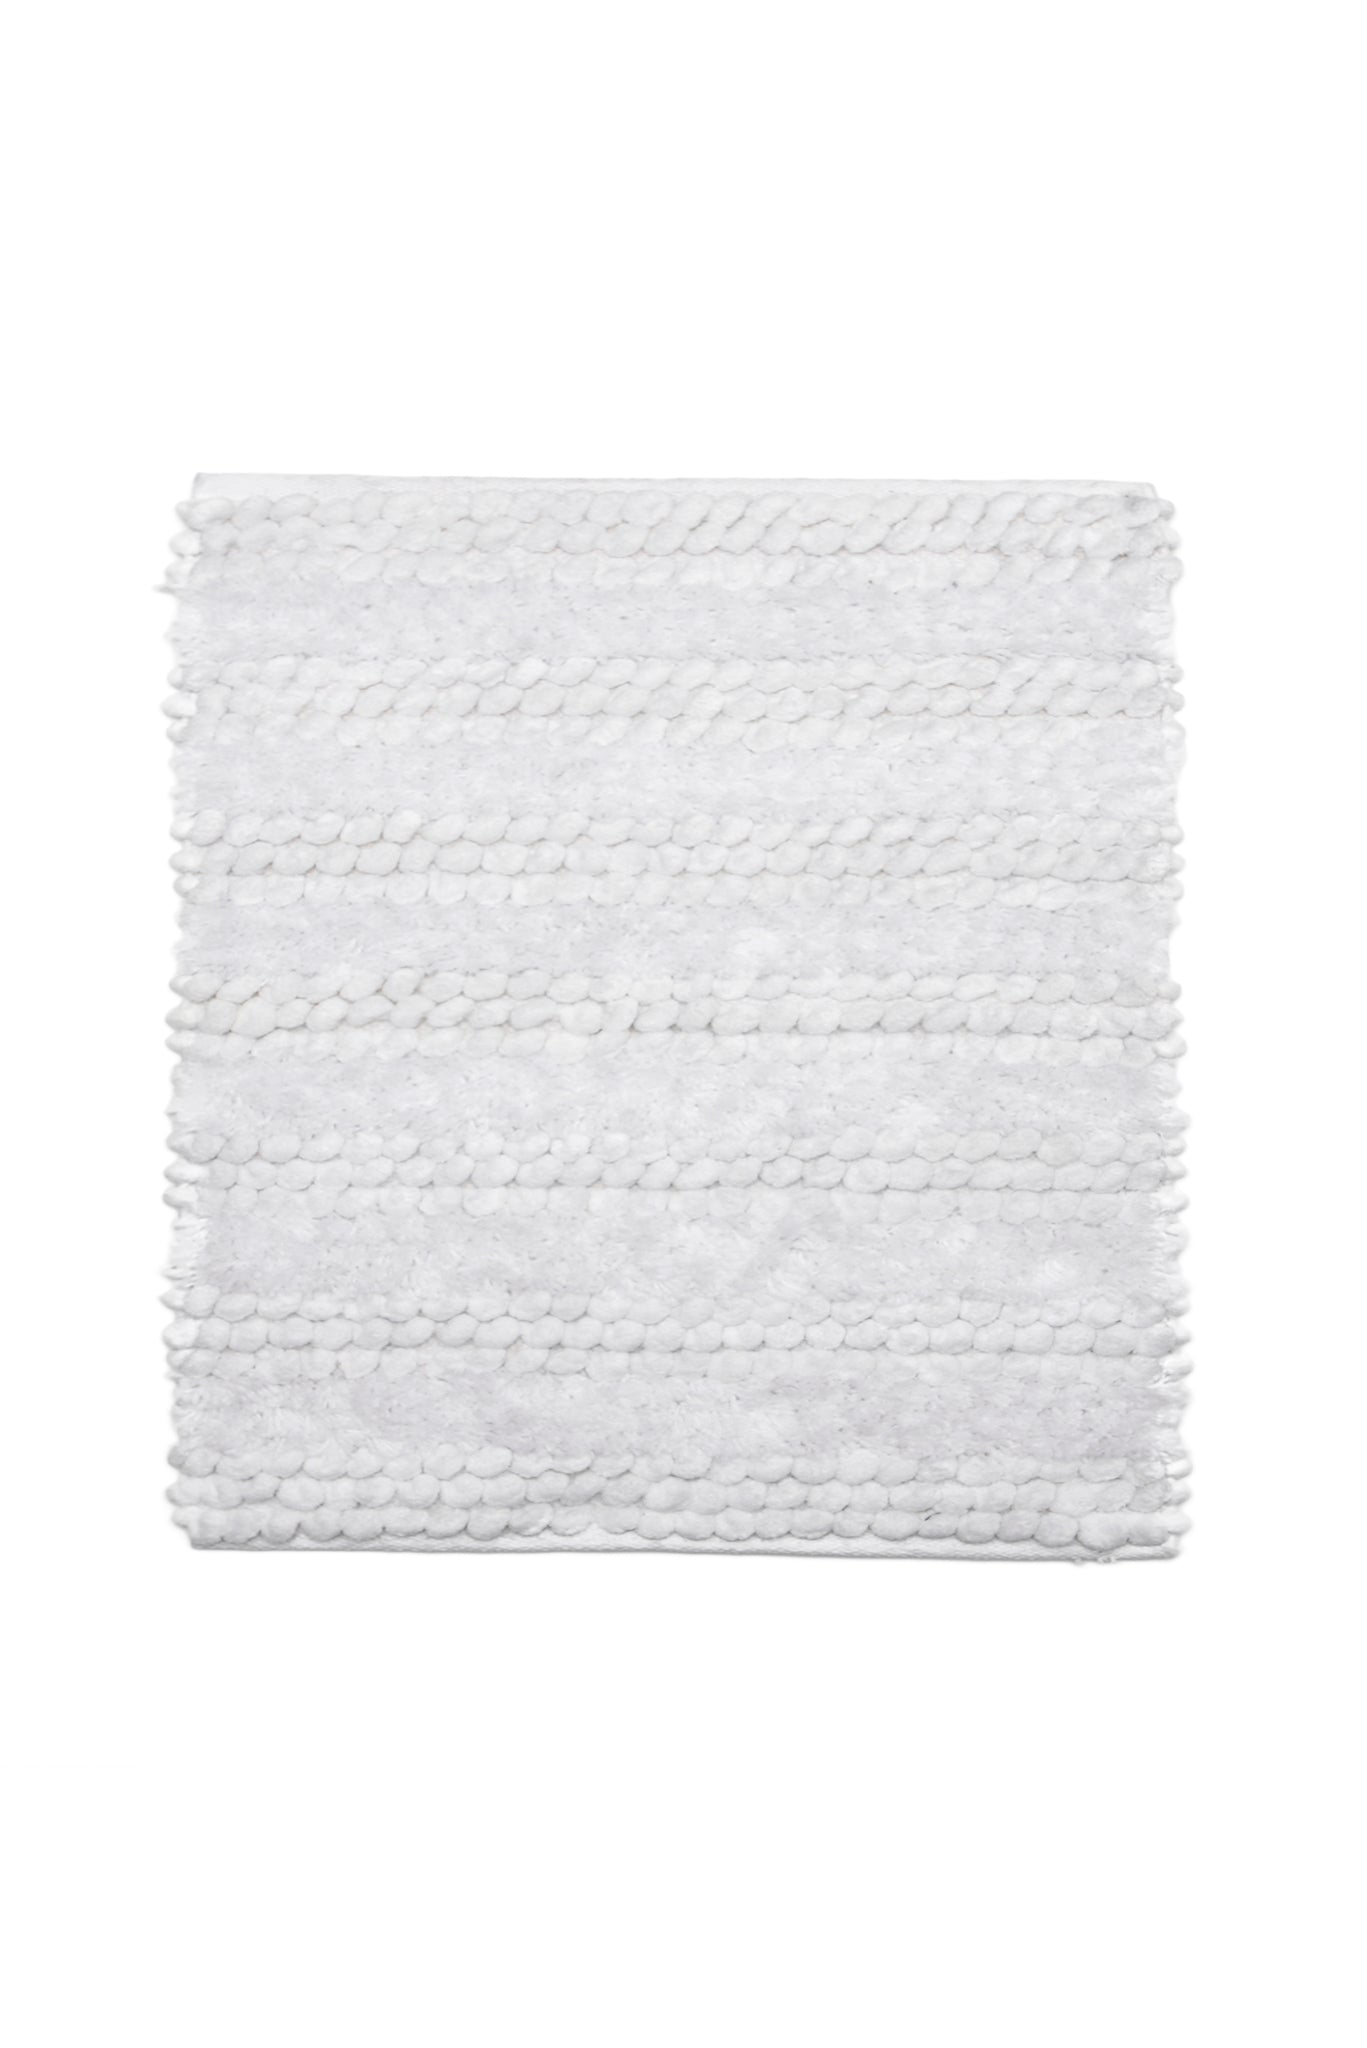 Badmat Roberto White - 60% Katoen 40% Polyester